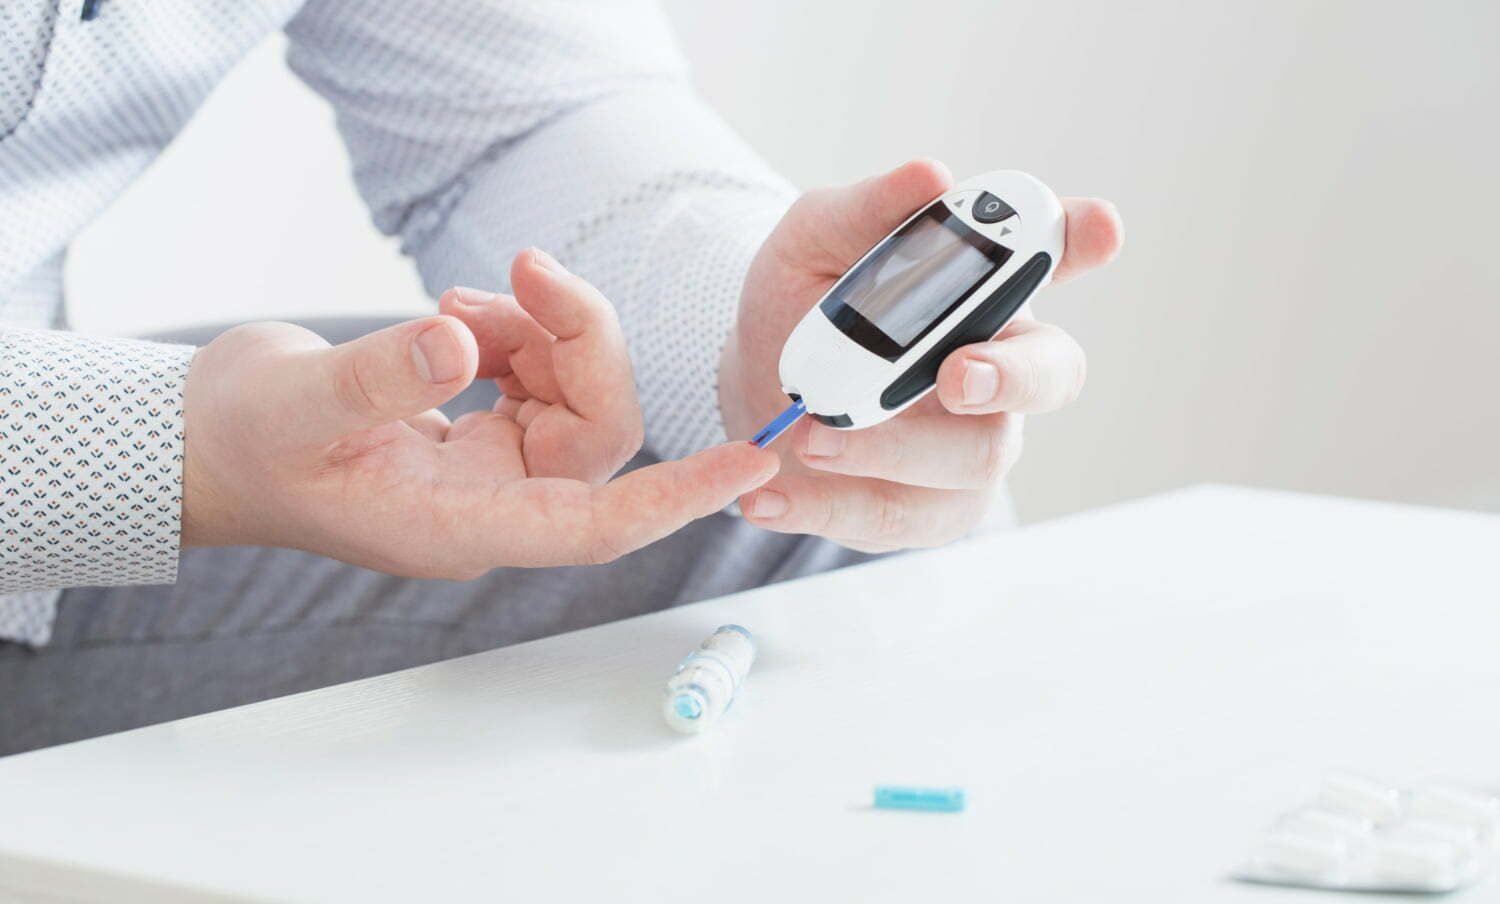 persona midiéndose la glucosa para evitar complicaciones con su diabetes / azúcar alta / hoja de guayaba / sedentario